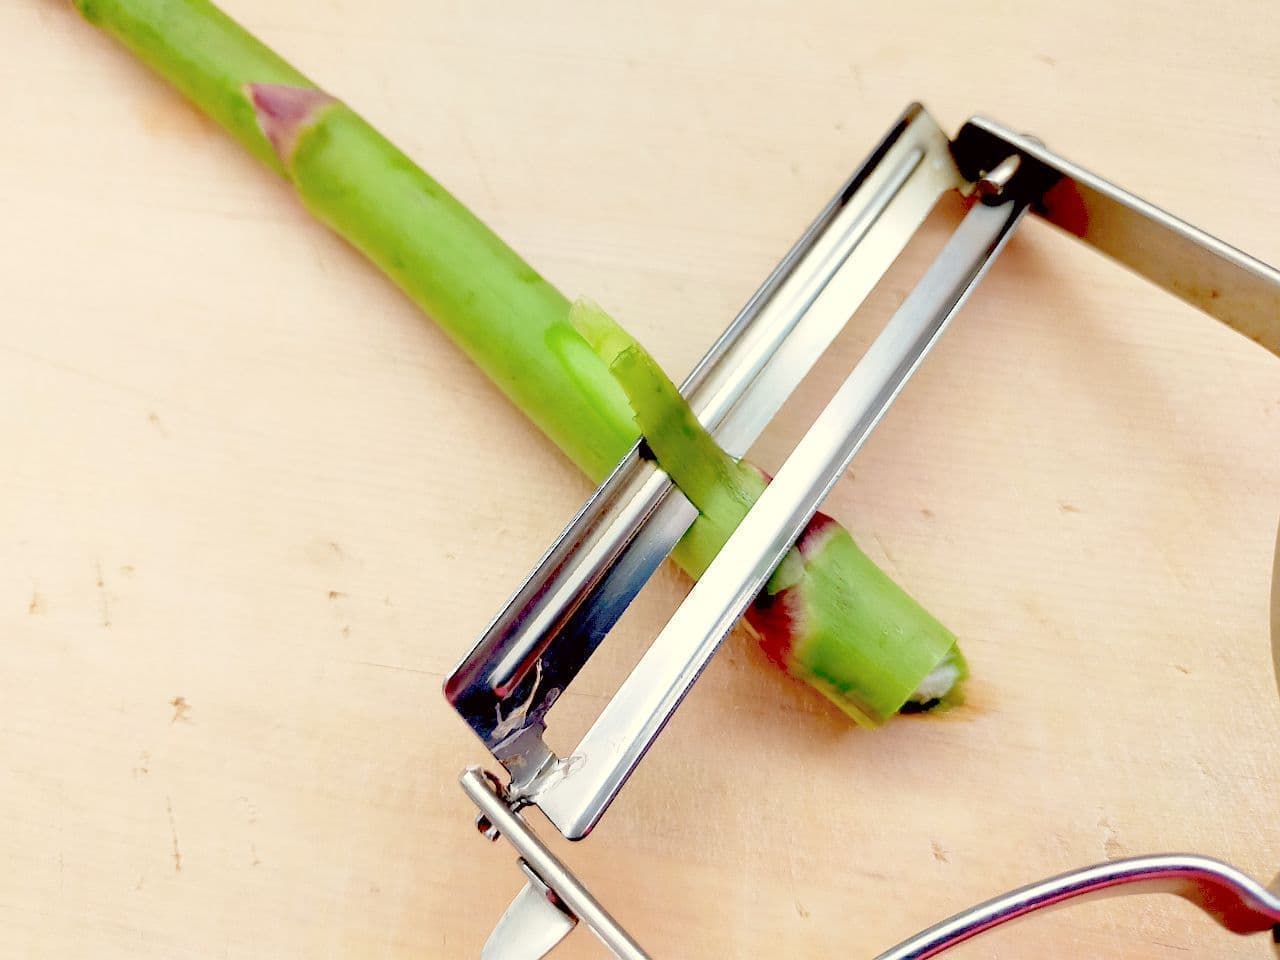 Step 3: How to prepare asparagus